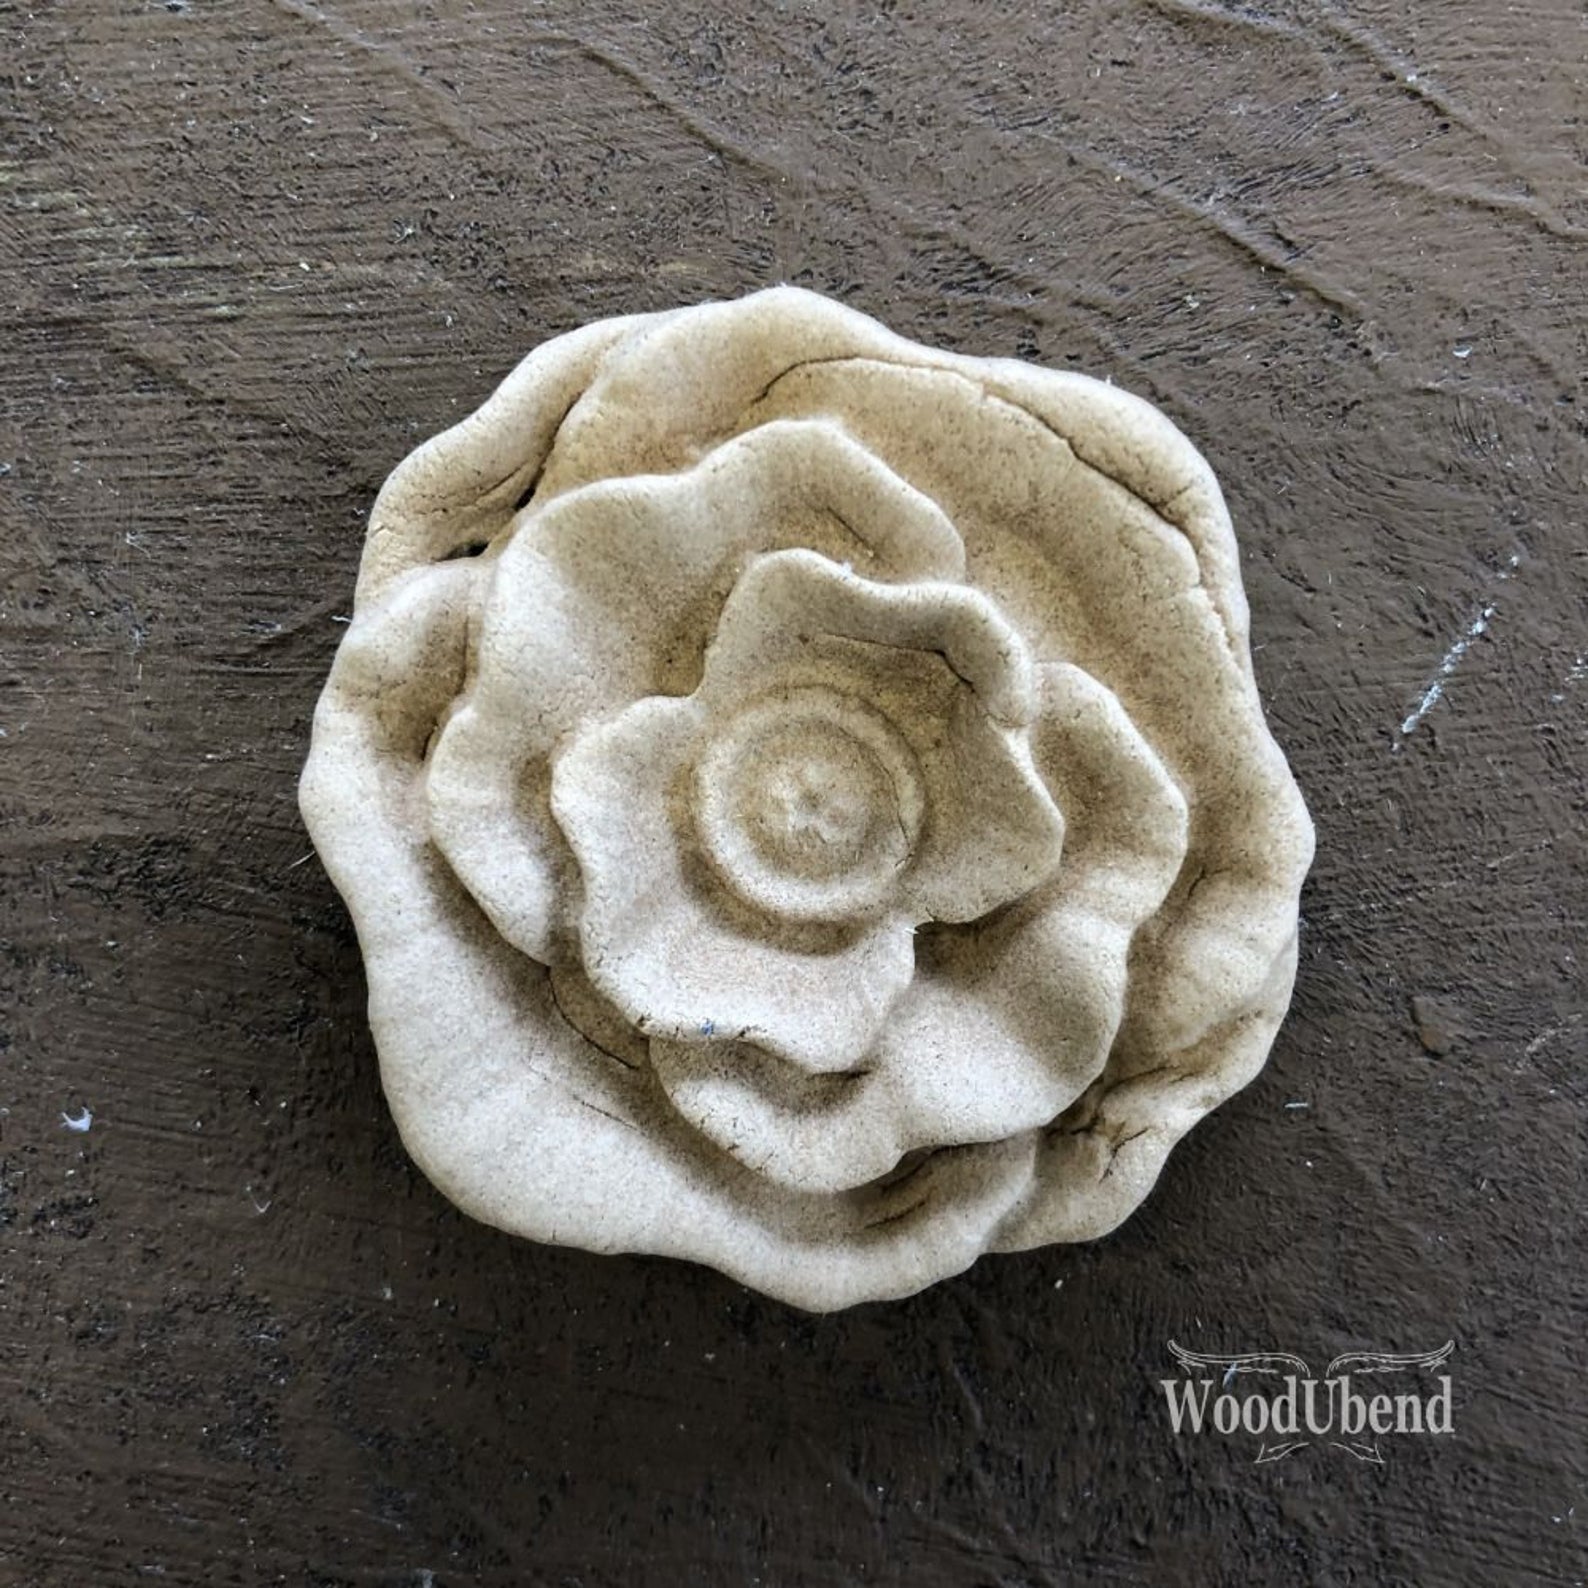 Woodubend Smooth Petal Flower WUB0498 5cms